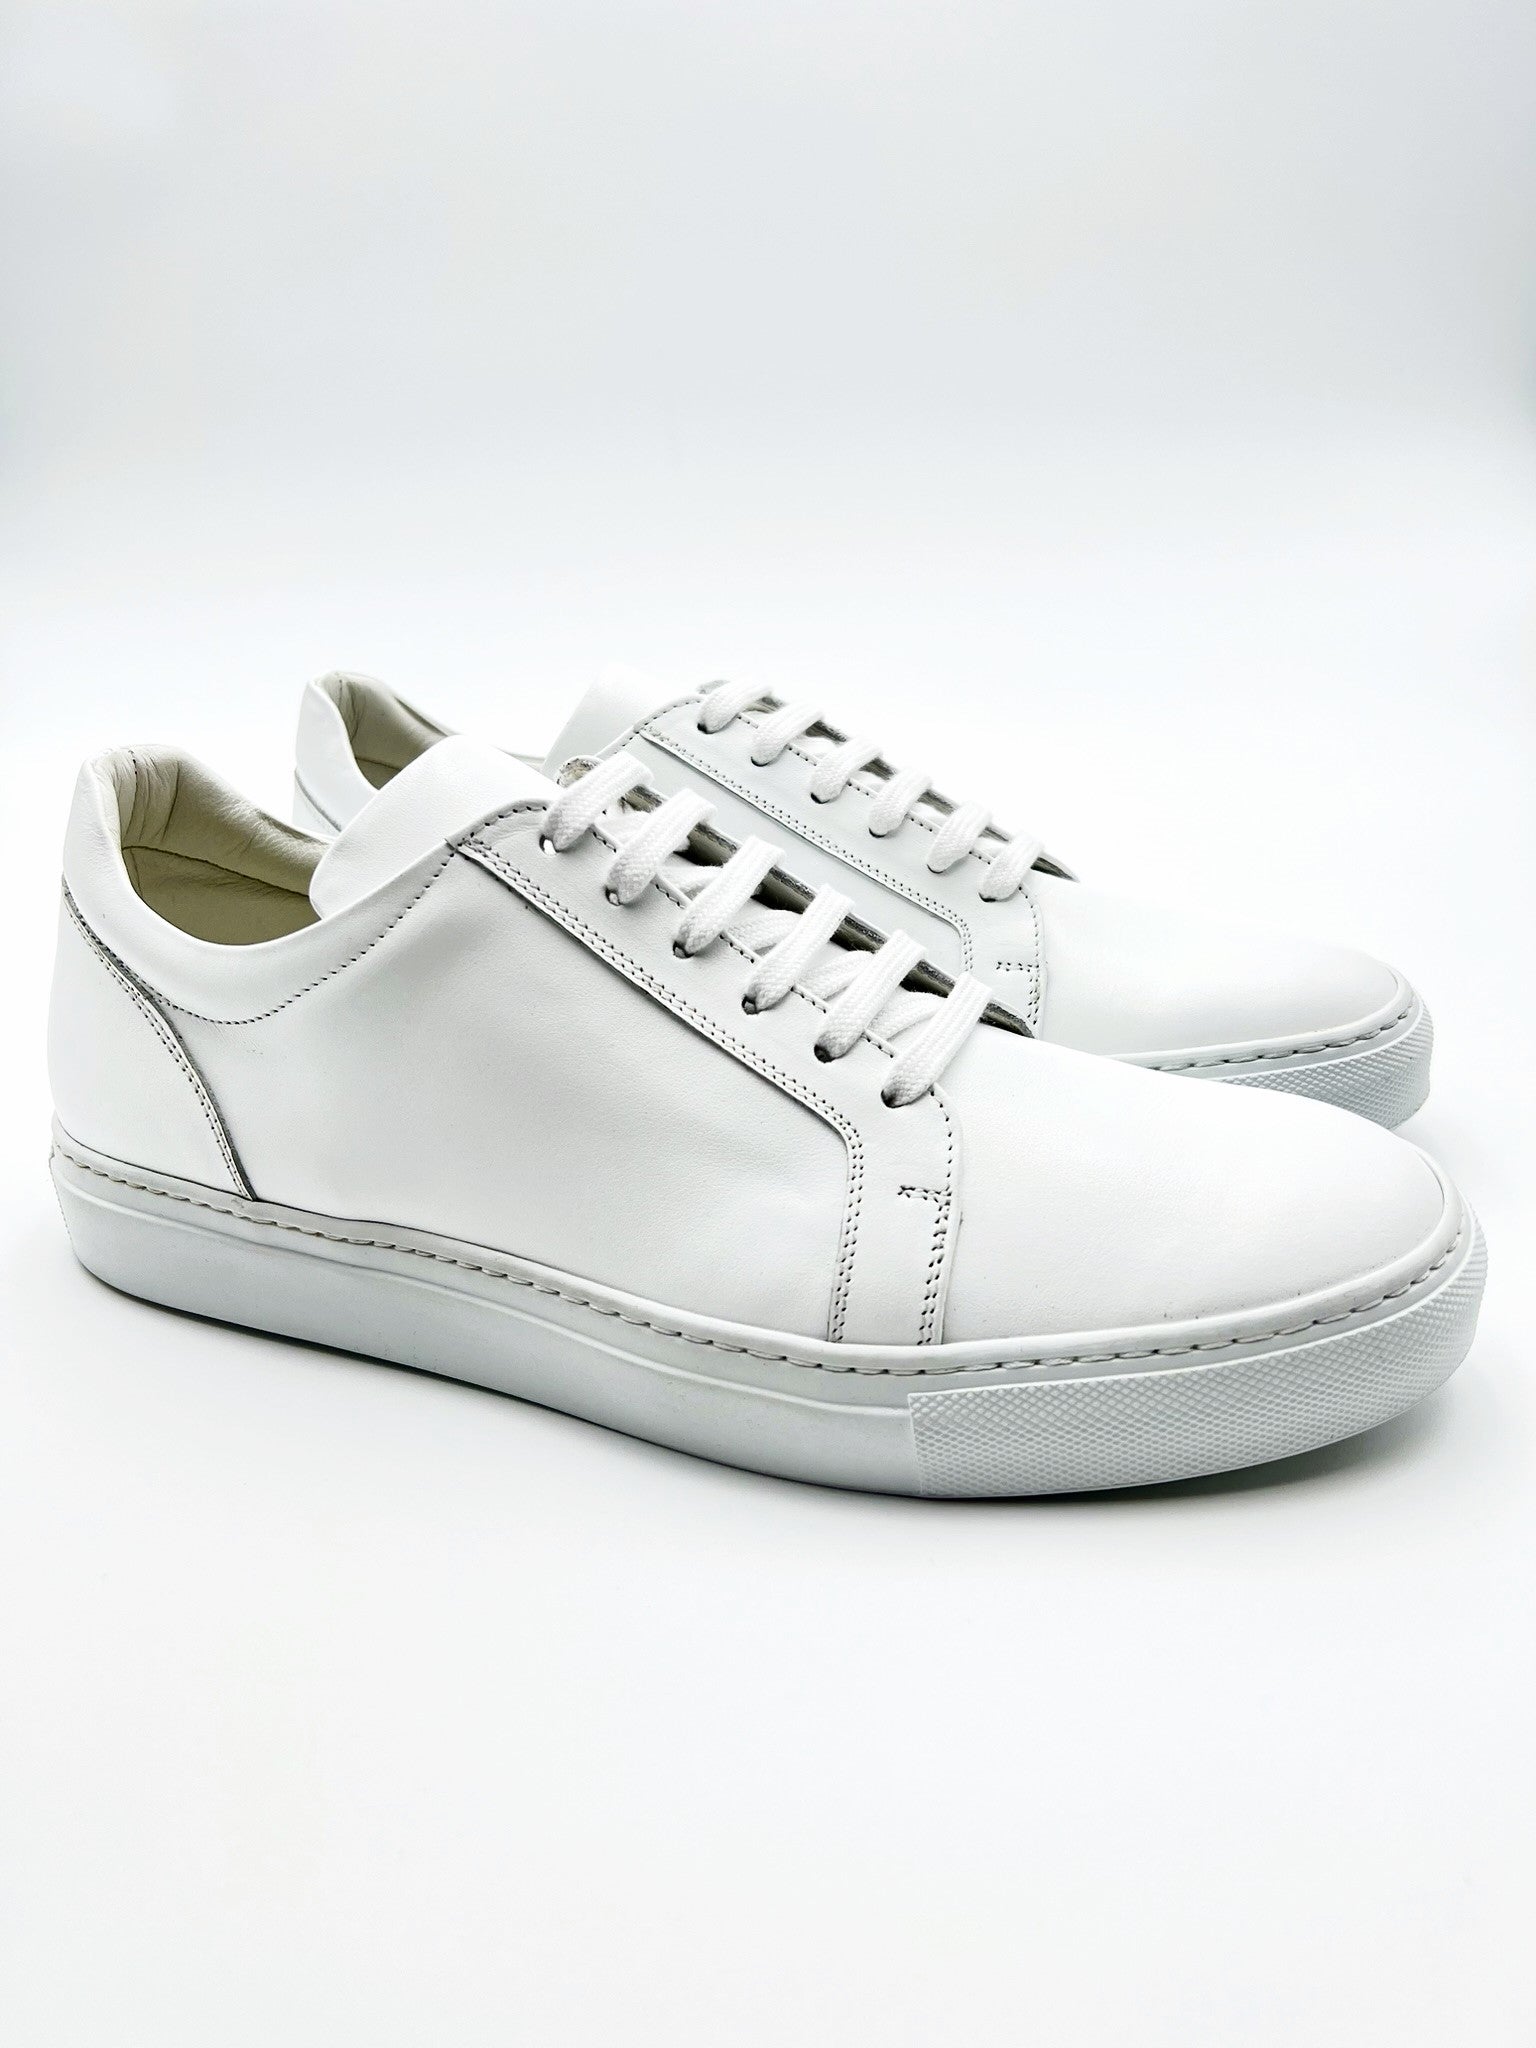 White Leather Sneakers – Sartoria Dei Duchi - Atri